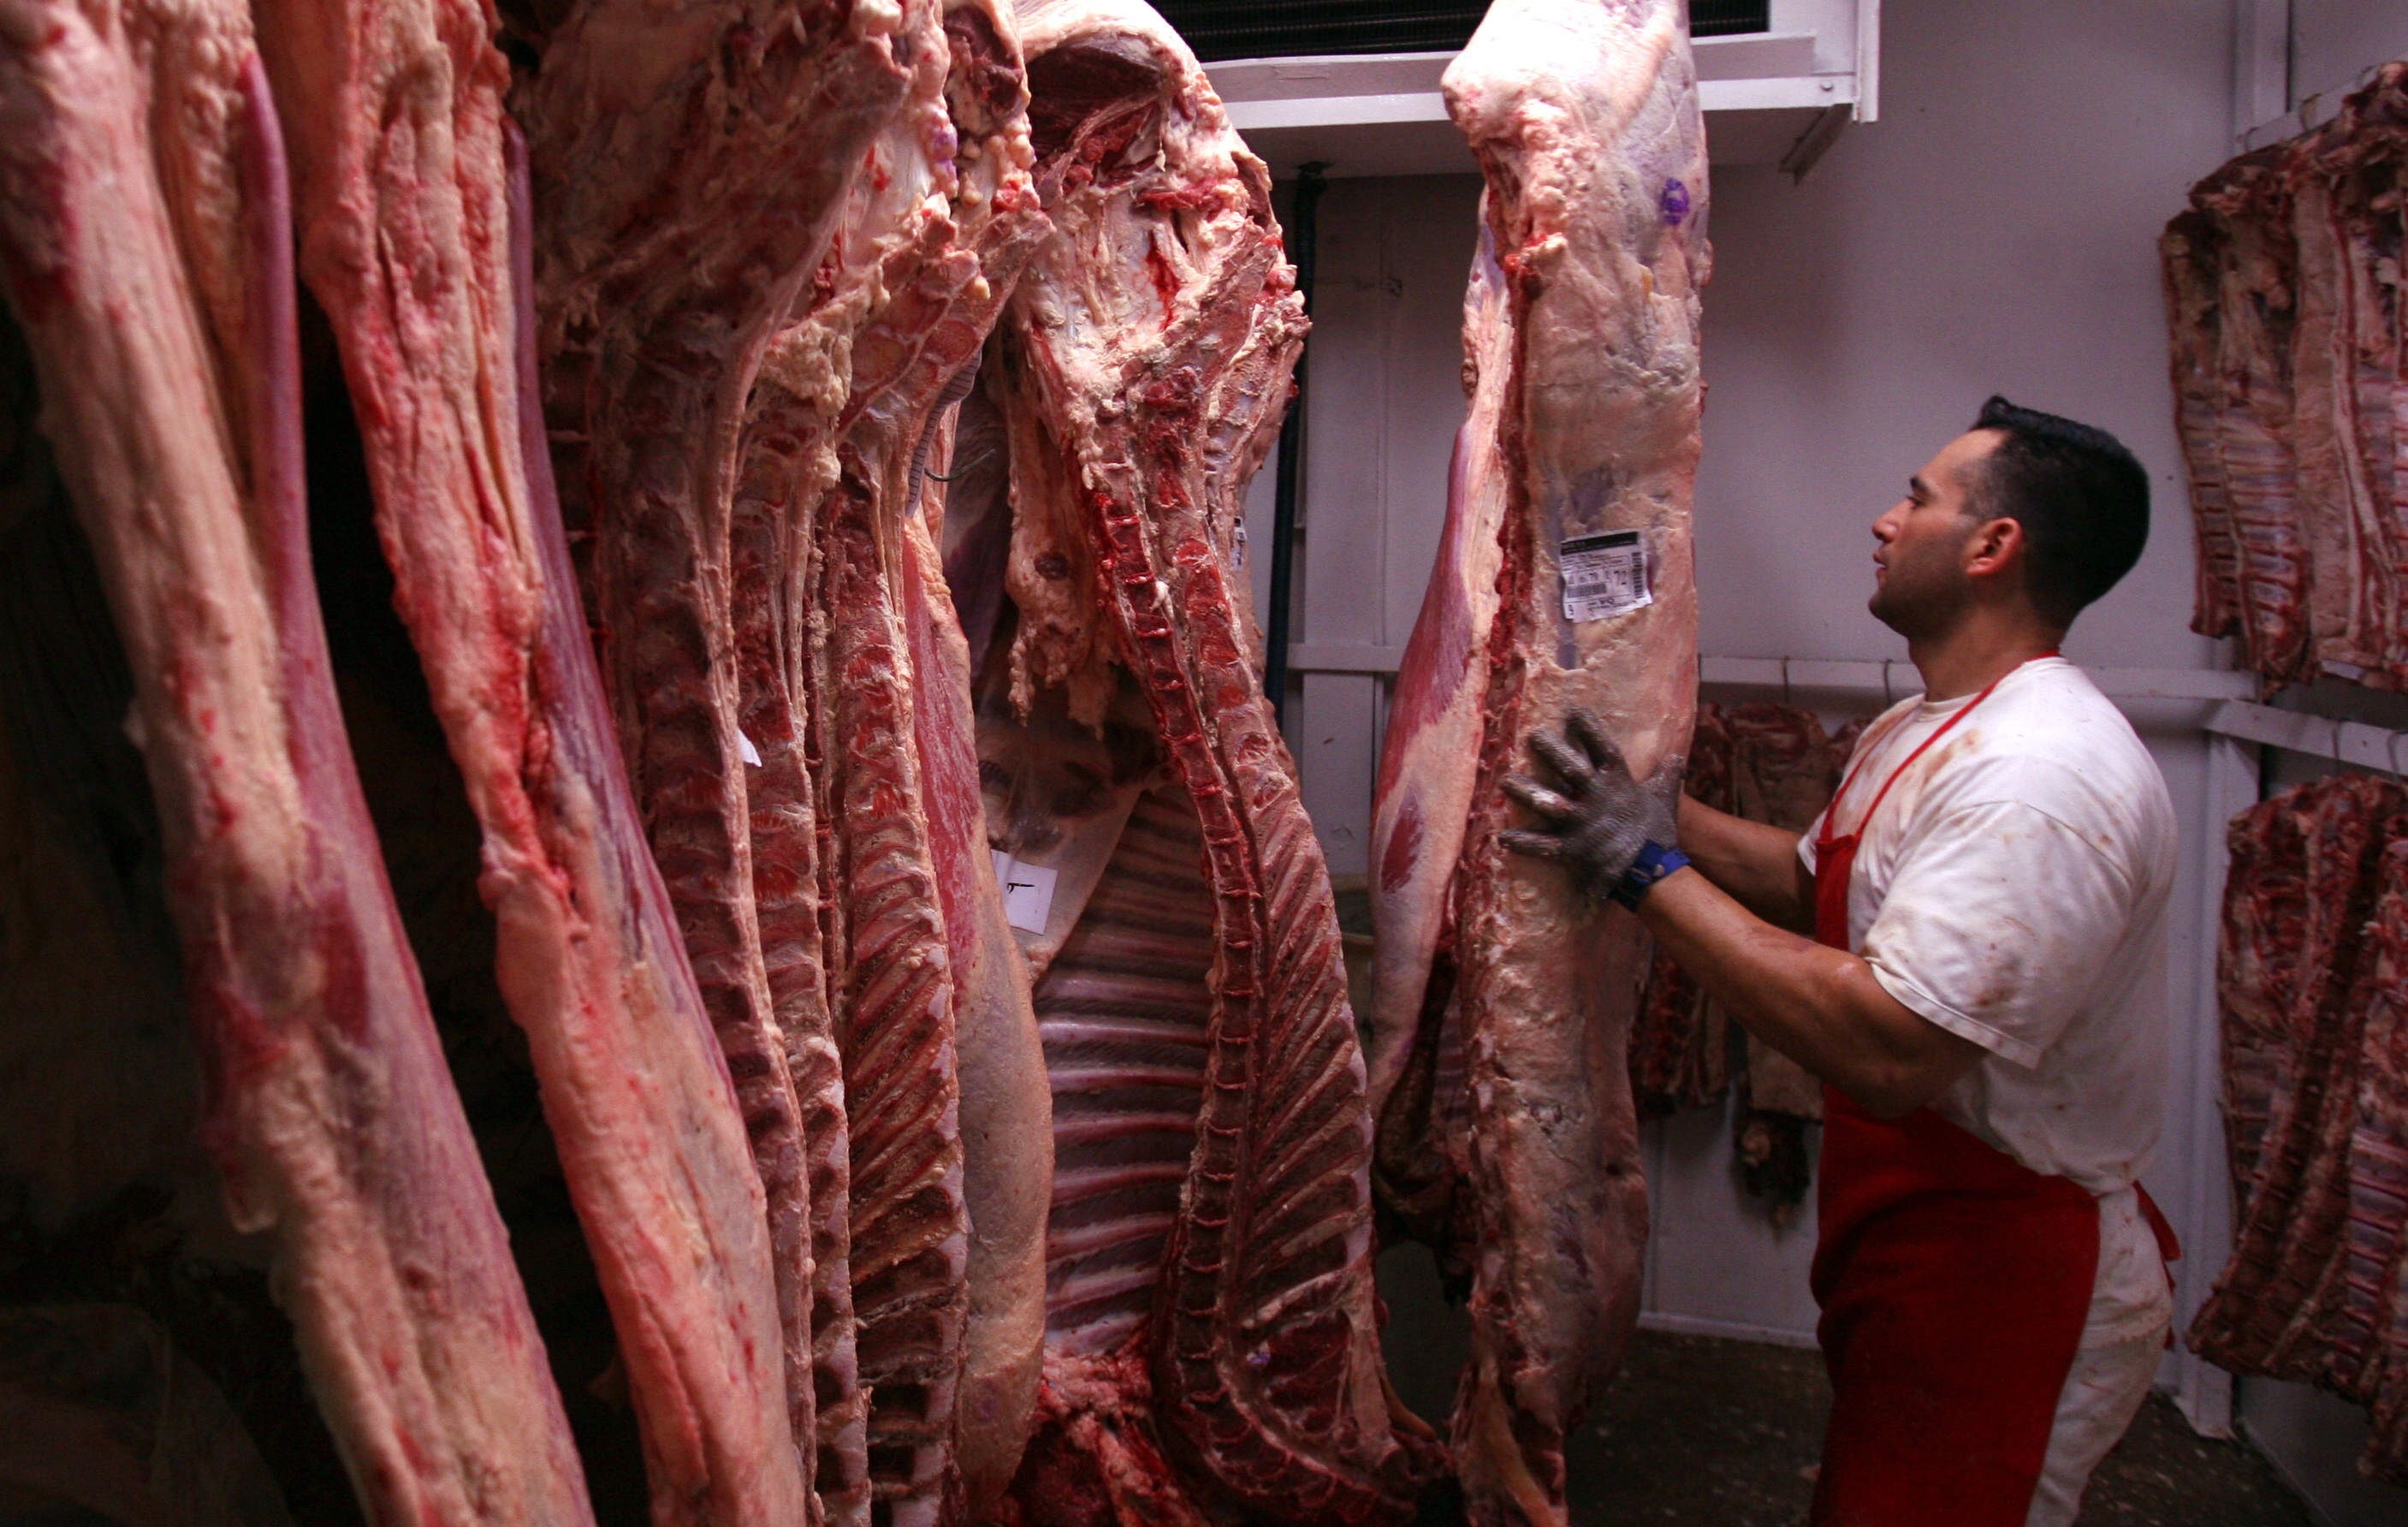 El precio que se le paga al ganadero por el kilo de carne ha disminuido 6 % en las últimas semanas. EFE/Cézaro De Luca/Archivo
